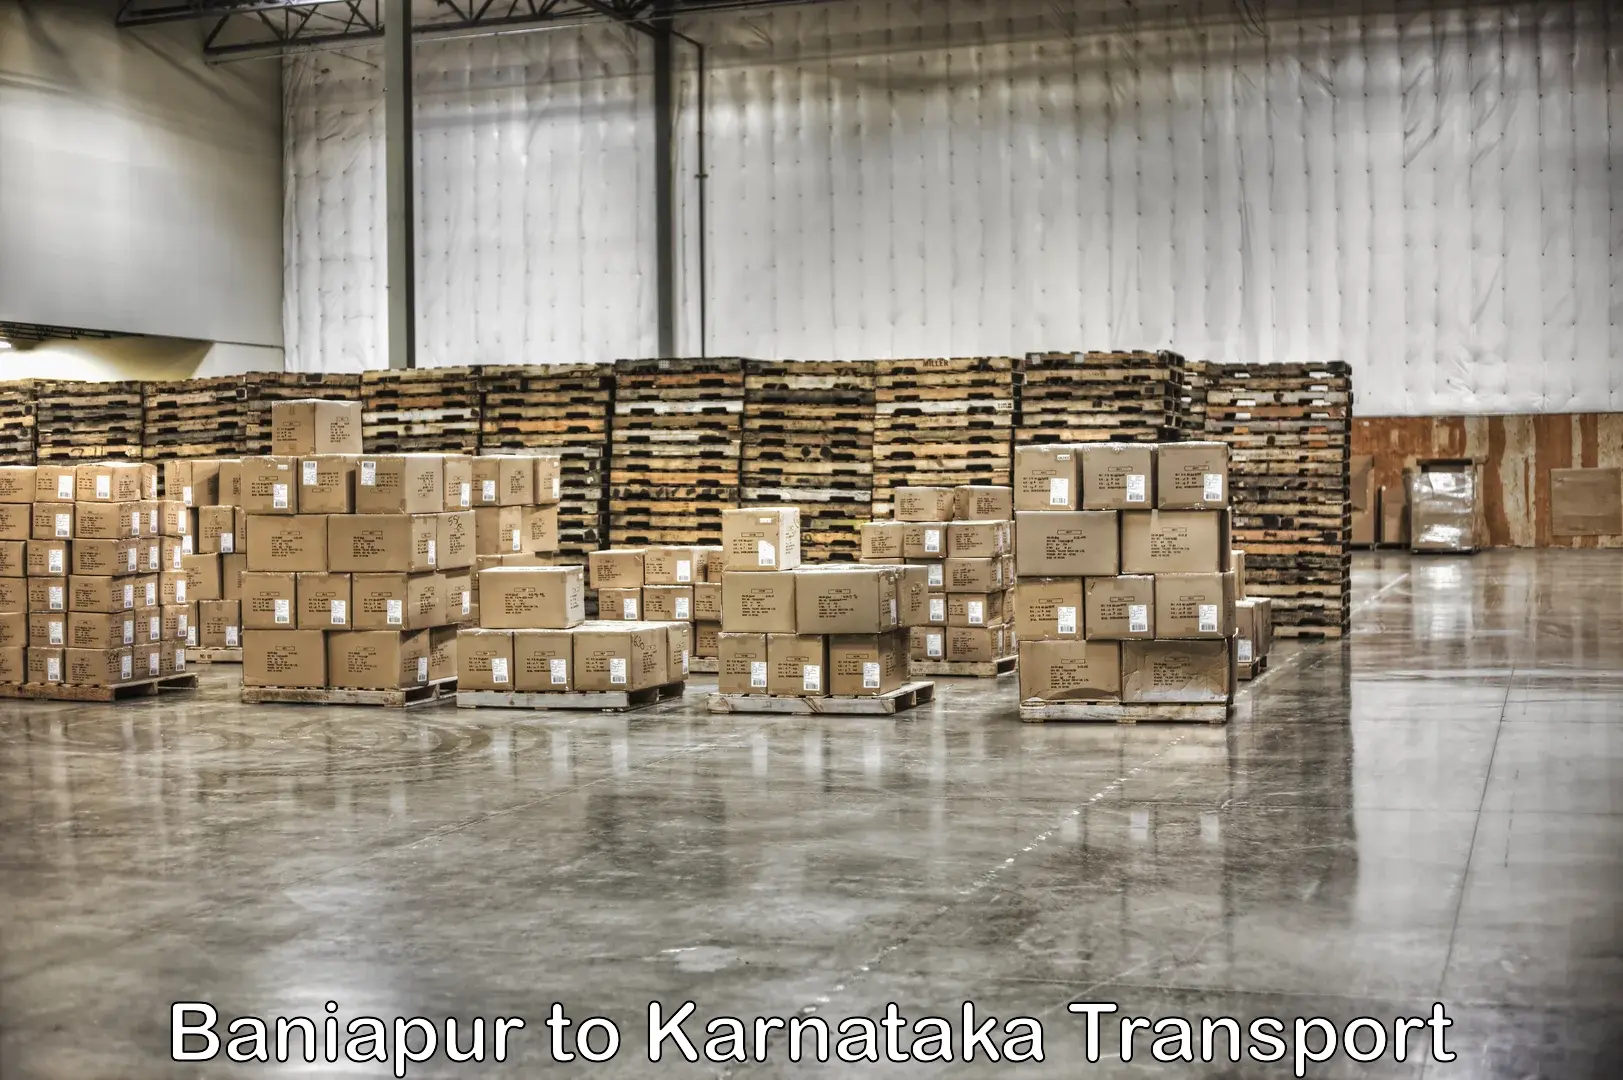 Pick up transport service Baniapur to Kanjarakatte